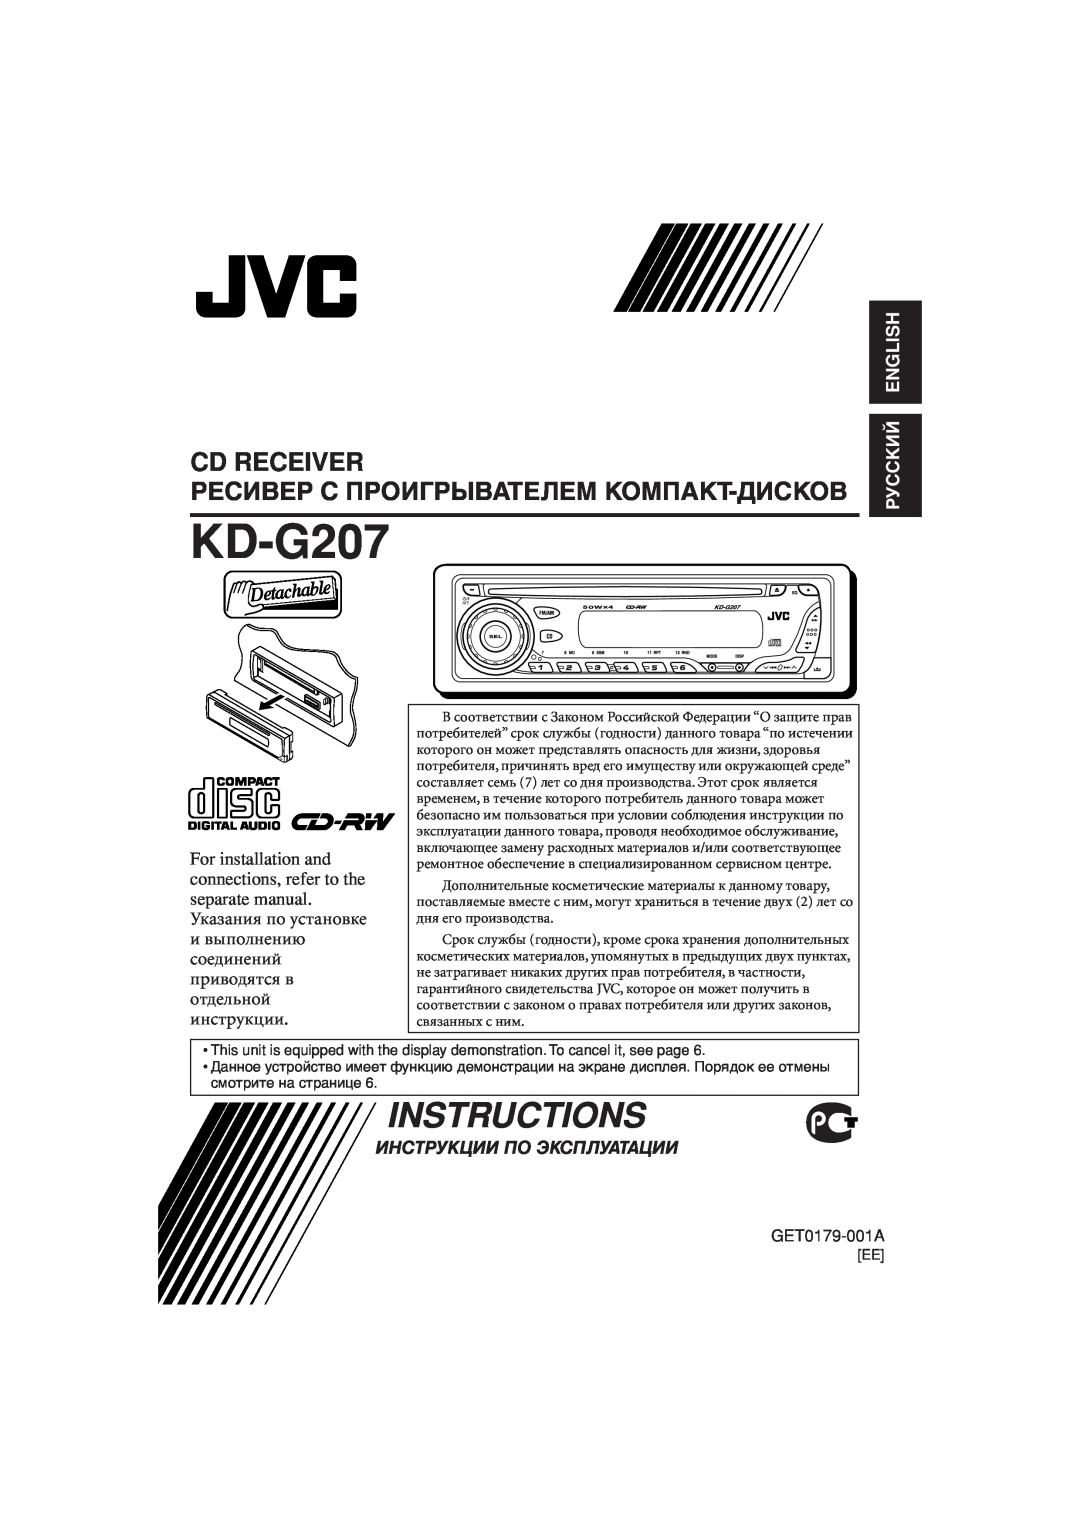 JVC KD-G201 manual KD-G207, Ресивер С Проигрывателем Компакт-Дисков, Инструкции По Эксплуатации, Instructions, Cd Receiver 